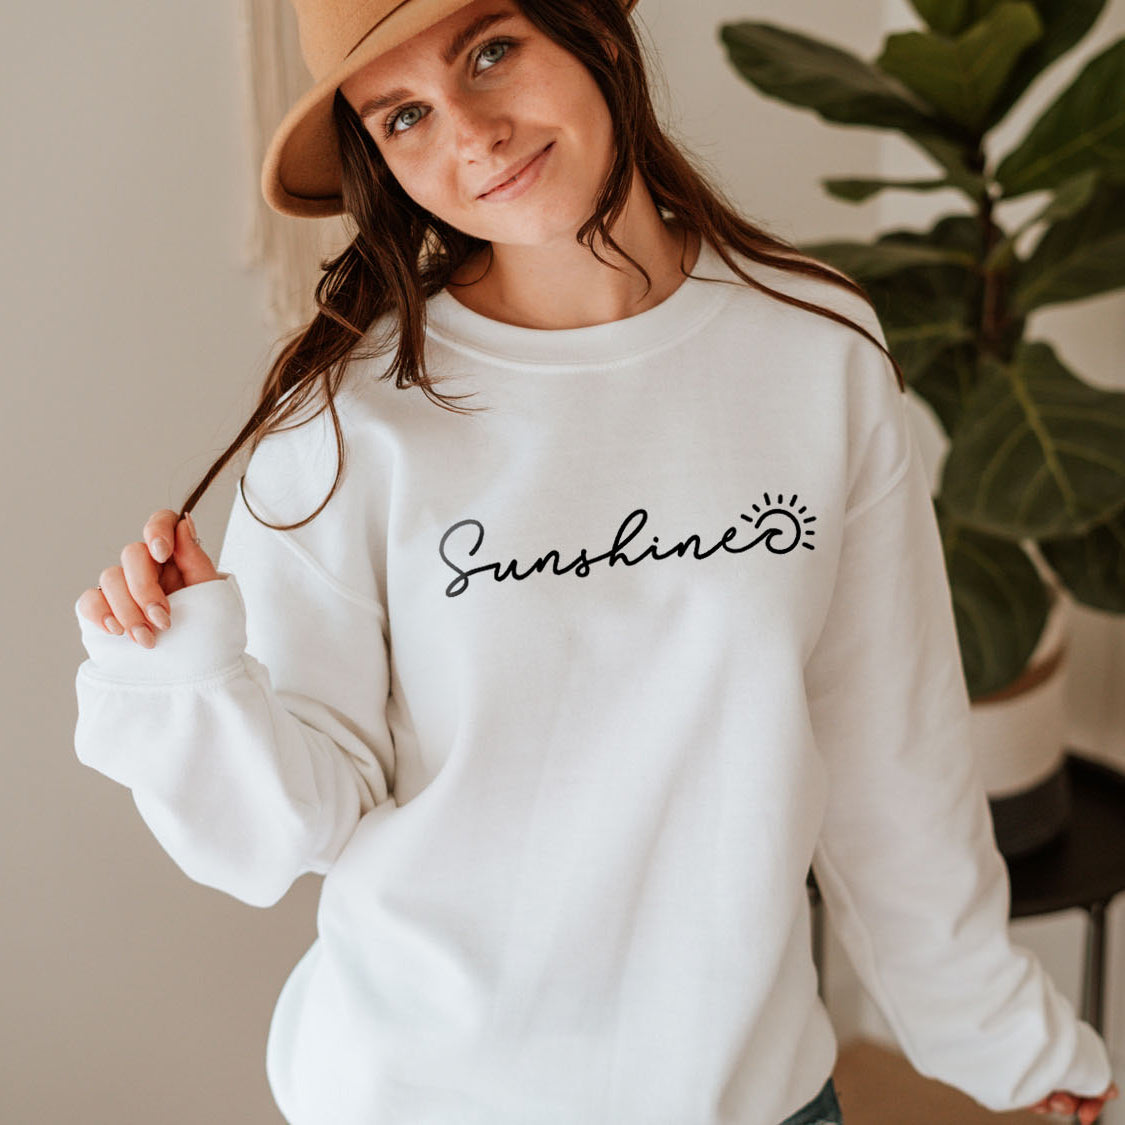 Sunshine Sweatshirt - Beach Vibes California State Minimal Design Printed Sweatshirt